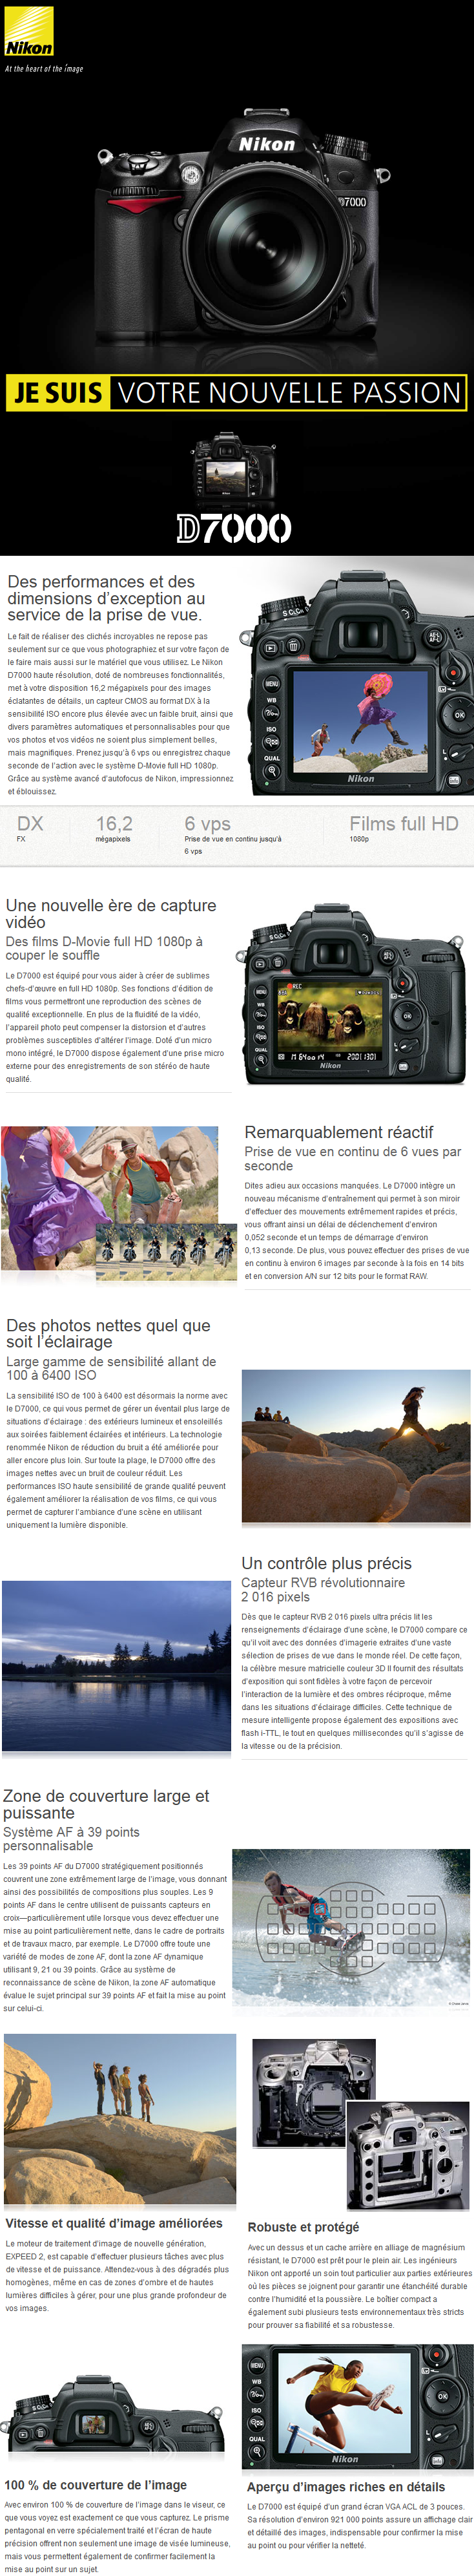 Acheter Reflex Nikon D7000 + Objectif AF-S DX Nikkor 18-105mm f/3.5-5.6G ED VR Maroc